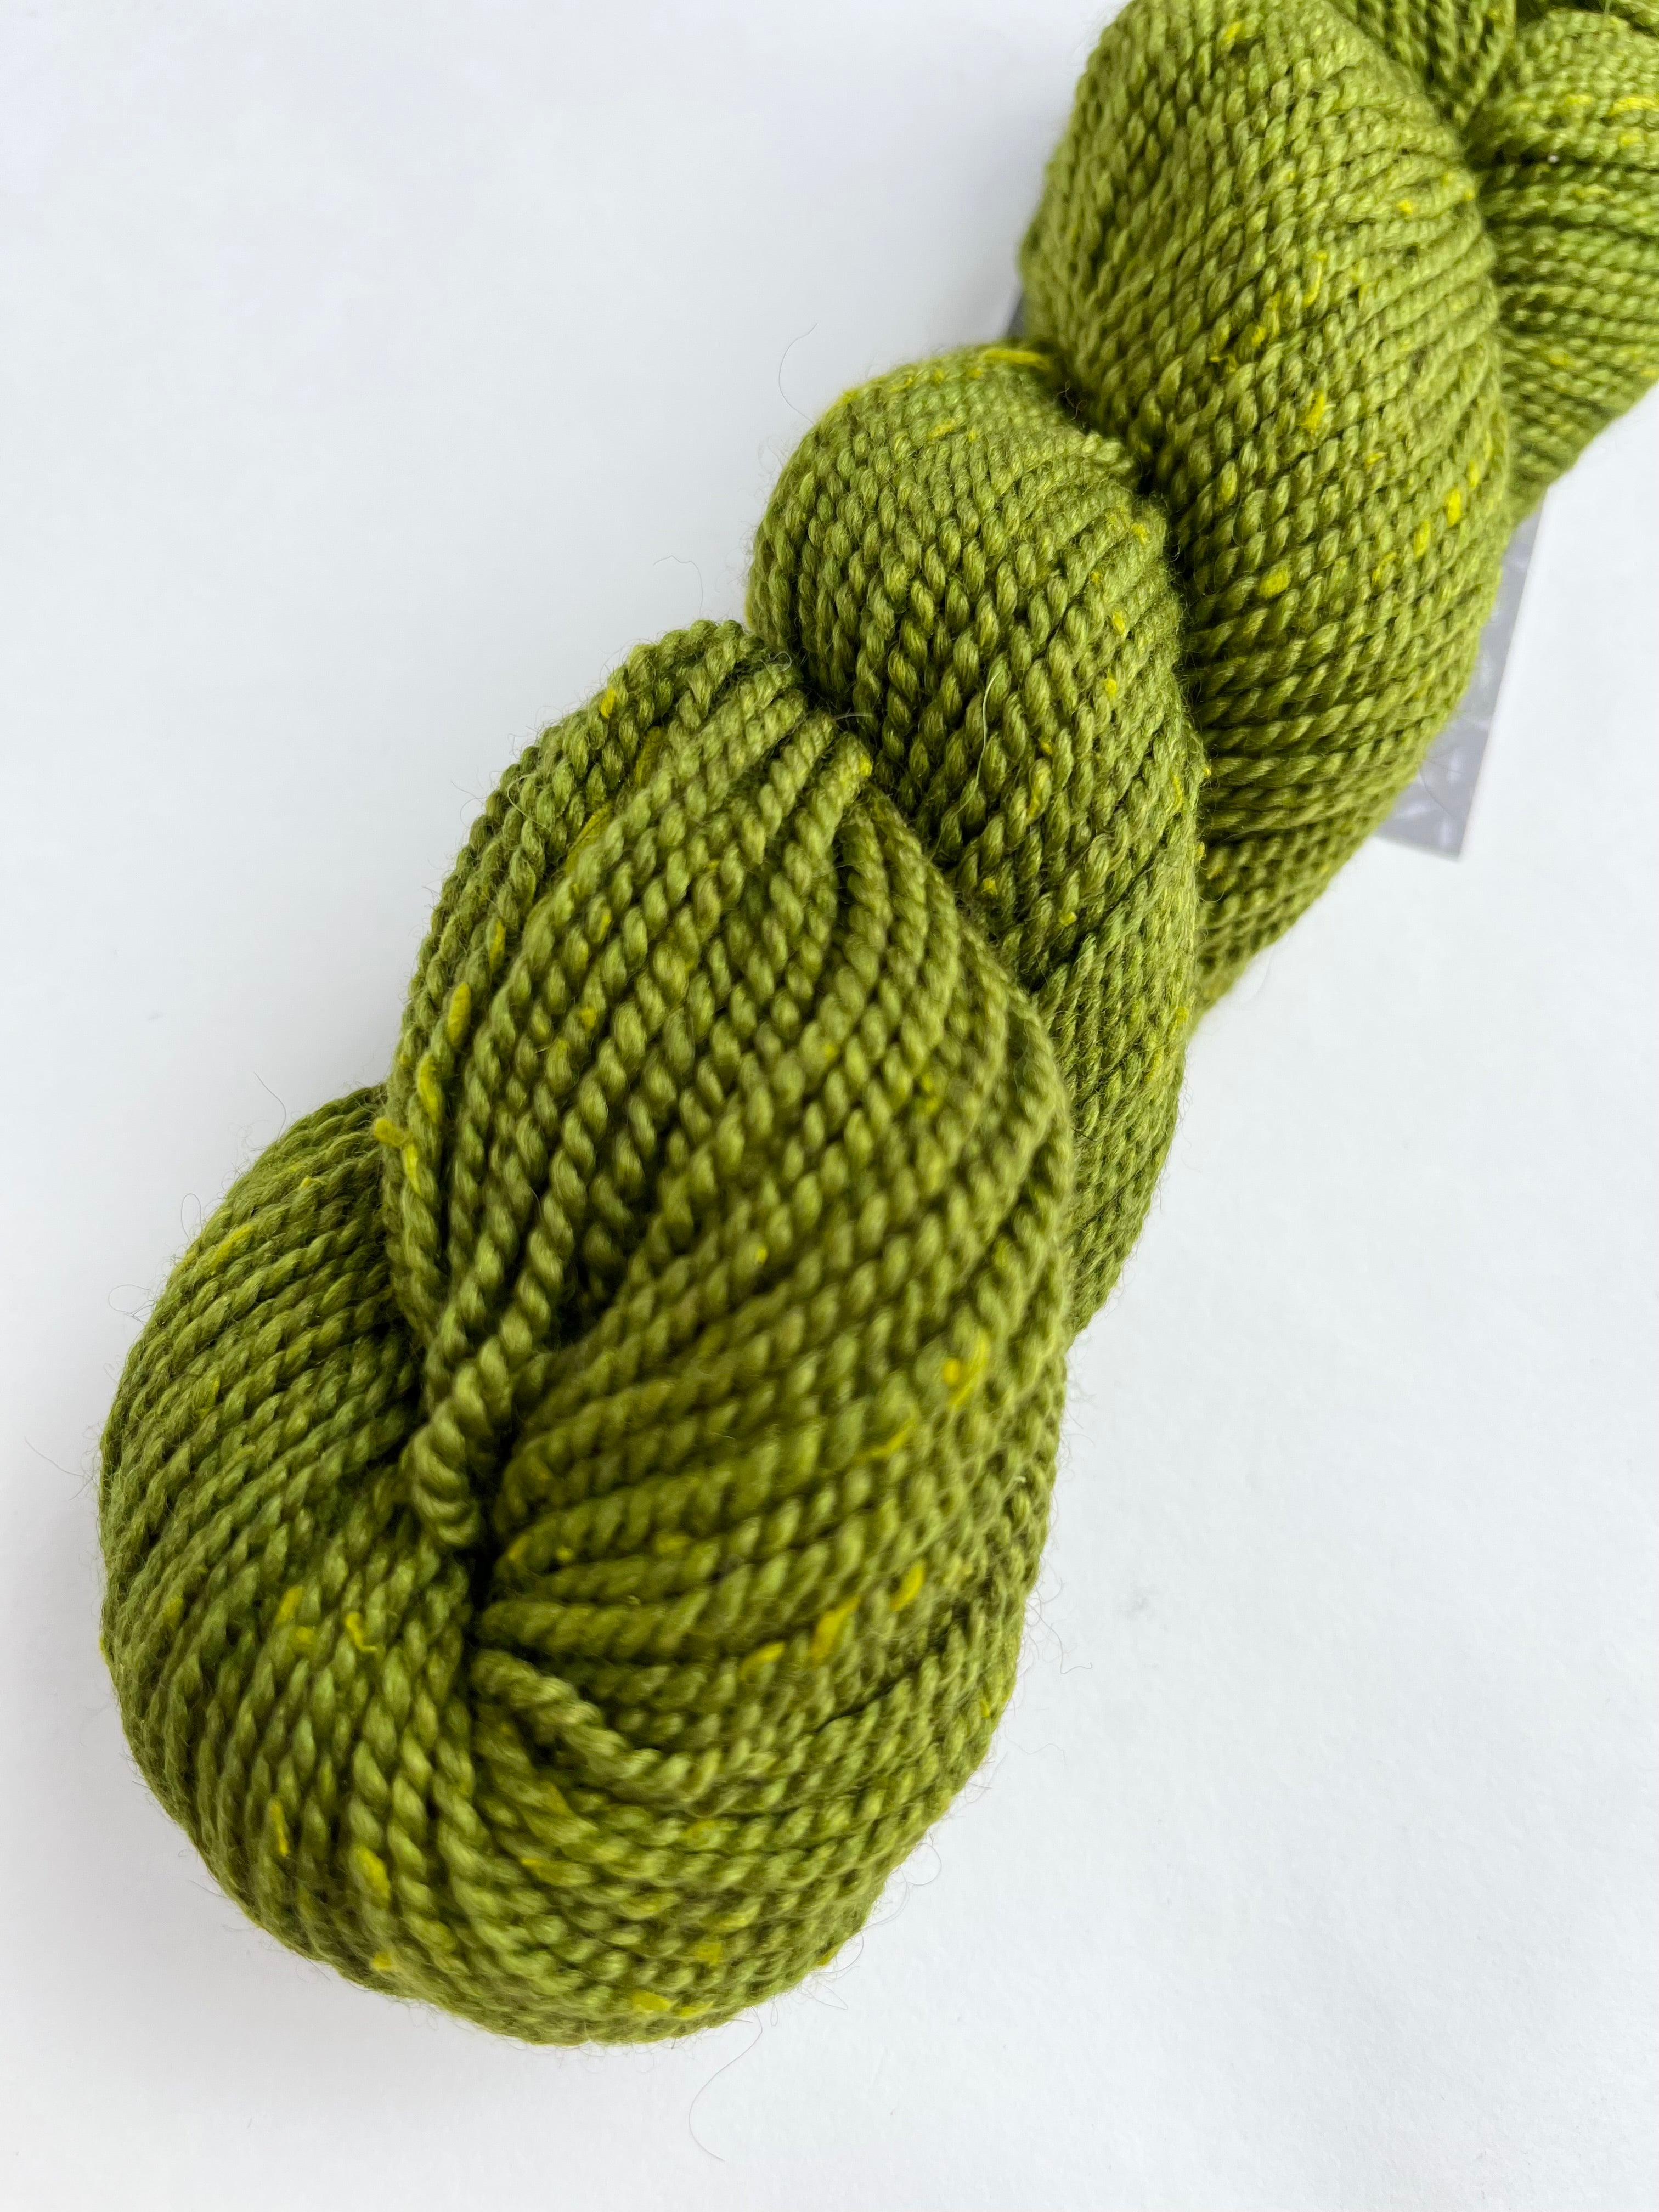 Acadia yarn from The Fibre Co.